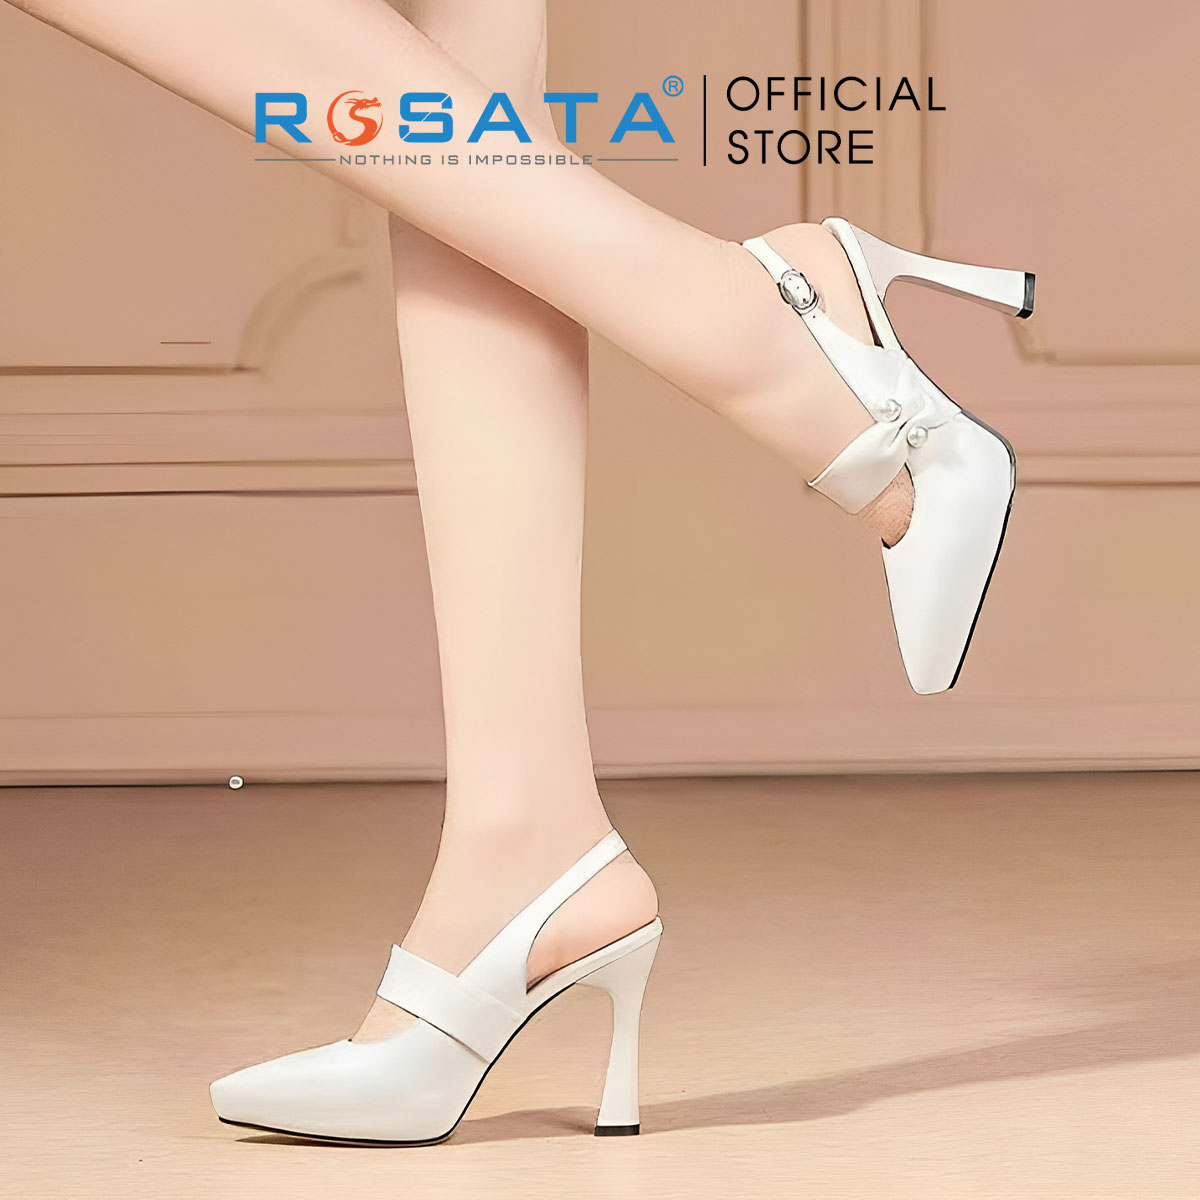 Sandal cao gót thời trang nữ bít mũi ROSATA RO601 - 9p - Đen, Trắng - HÀNG VIỆT NAM - BKSTORE